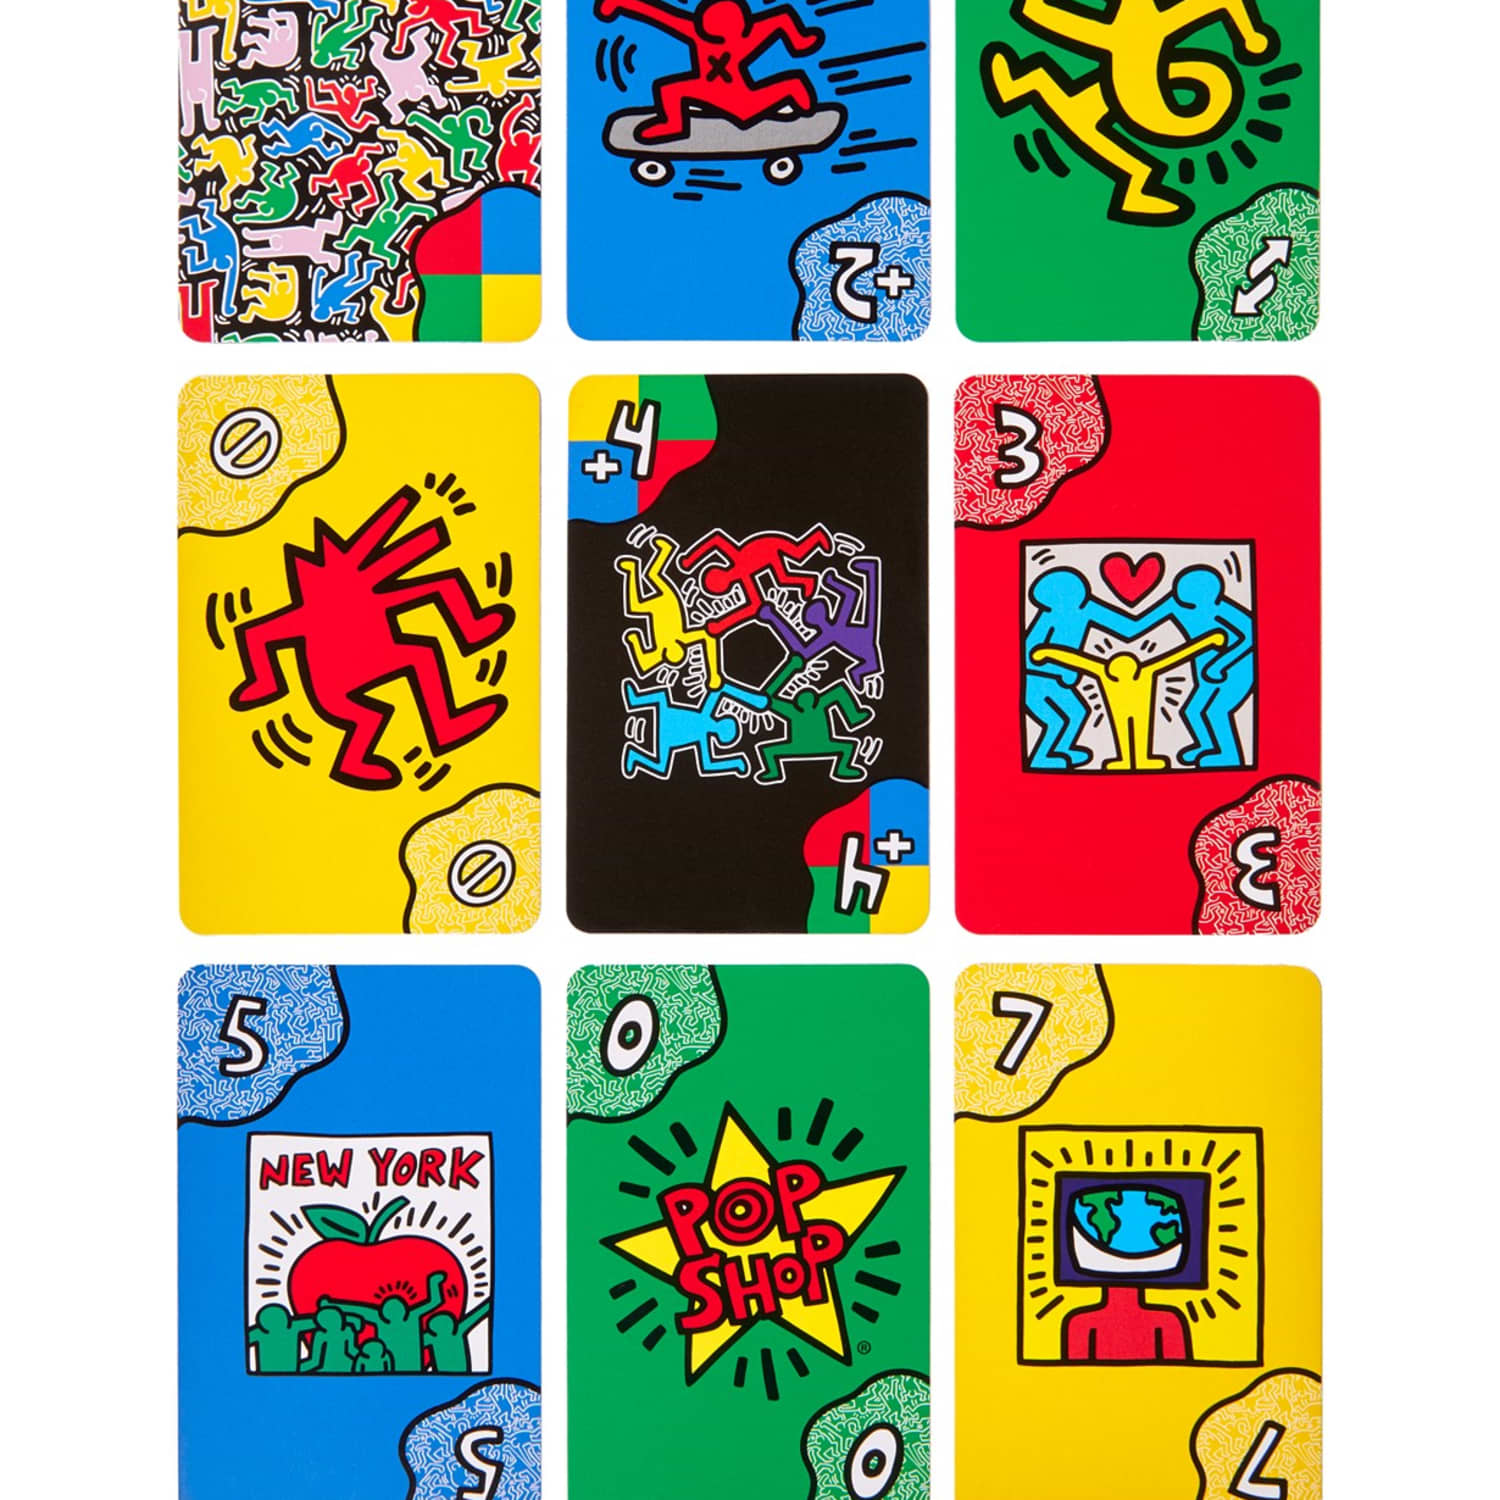 Jogo UNO Artist Keith Haring É o jogo UNO que você conhece agora